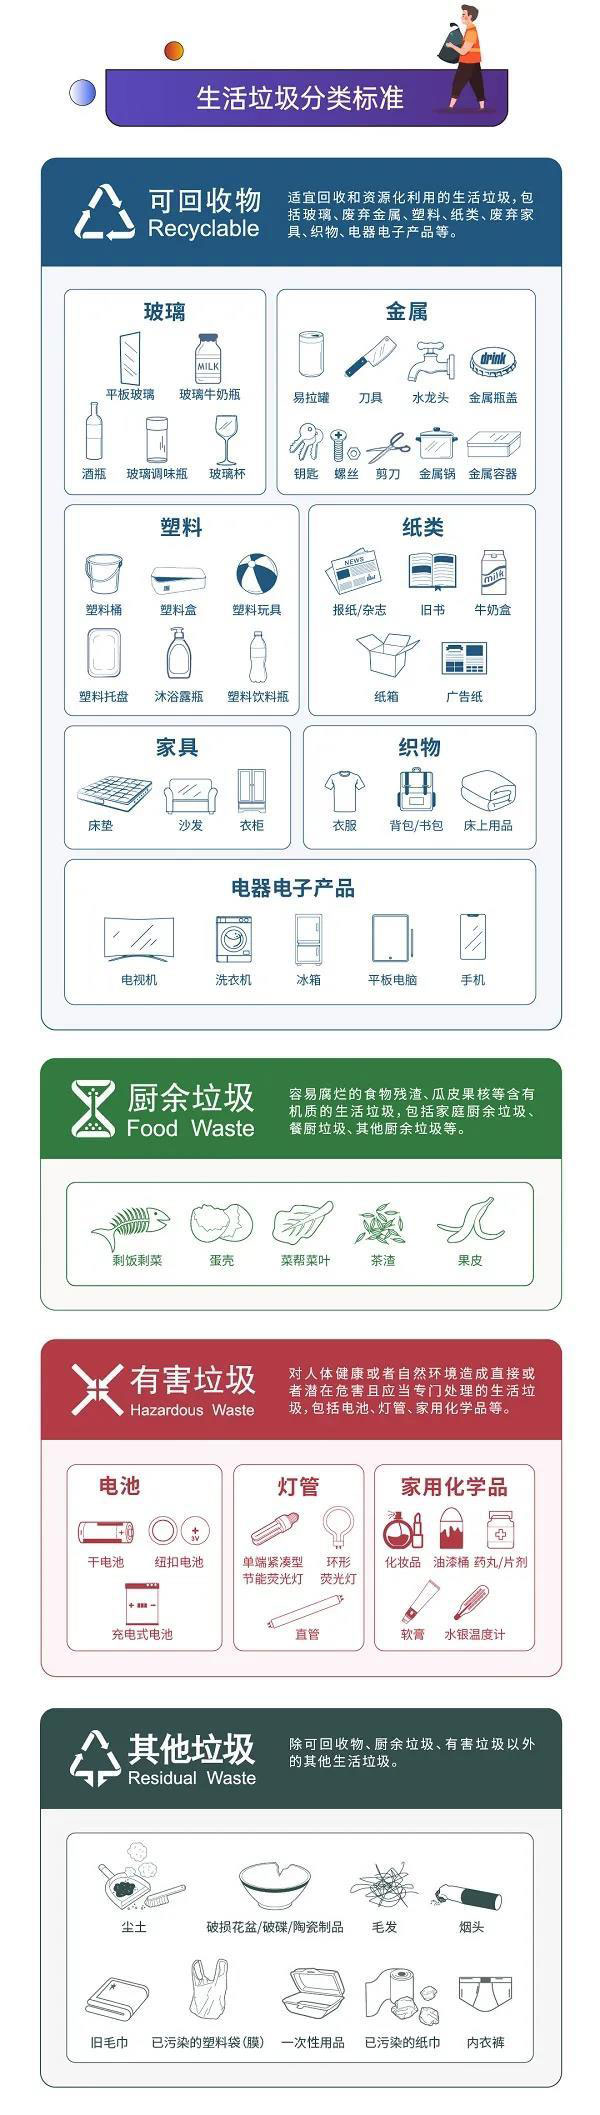 深圳垃圾分类明年起加重处罚